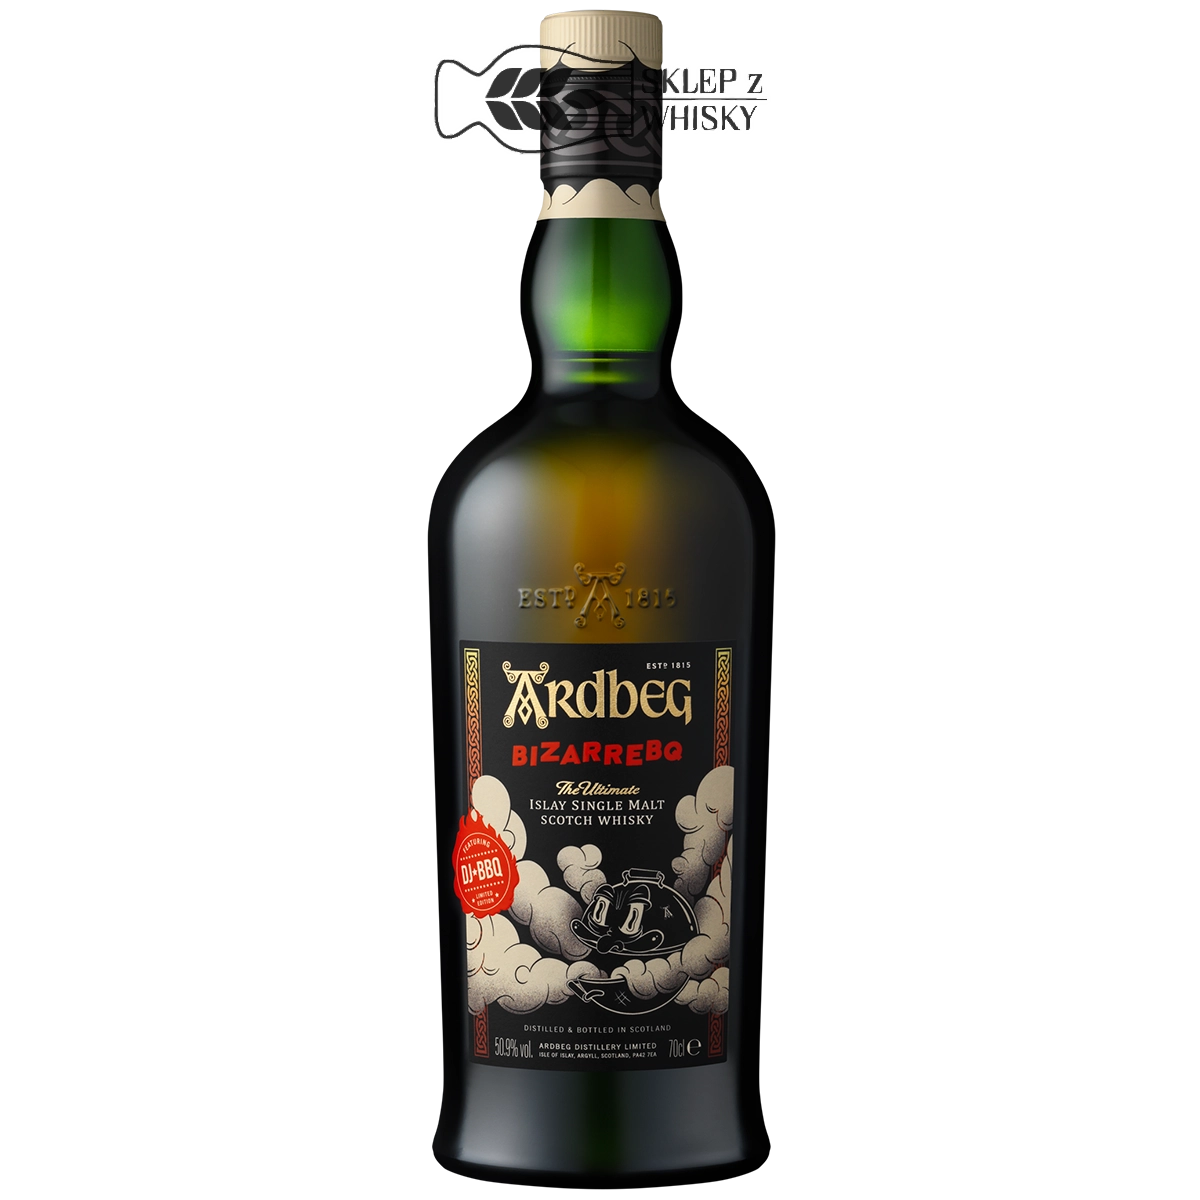 Ardbeg BizarreBQ szkocka whisky single malt z regionu islay